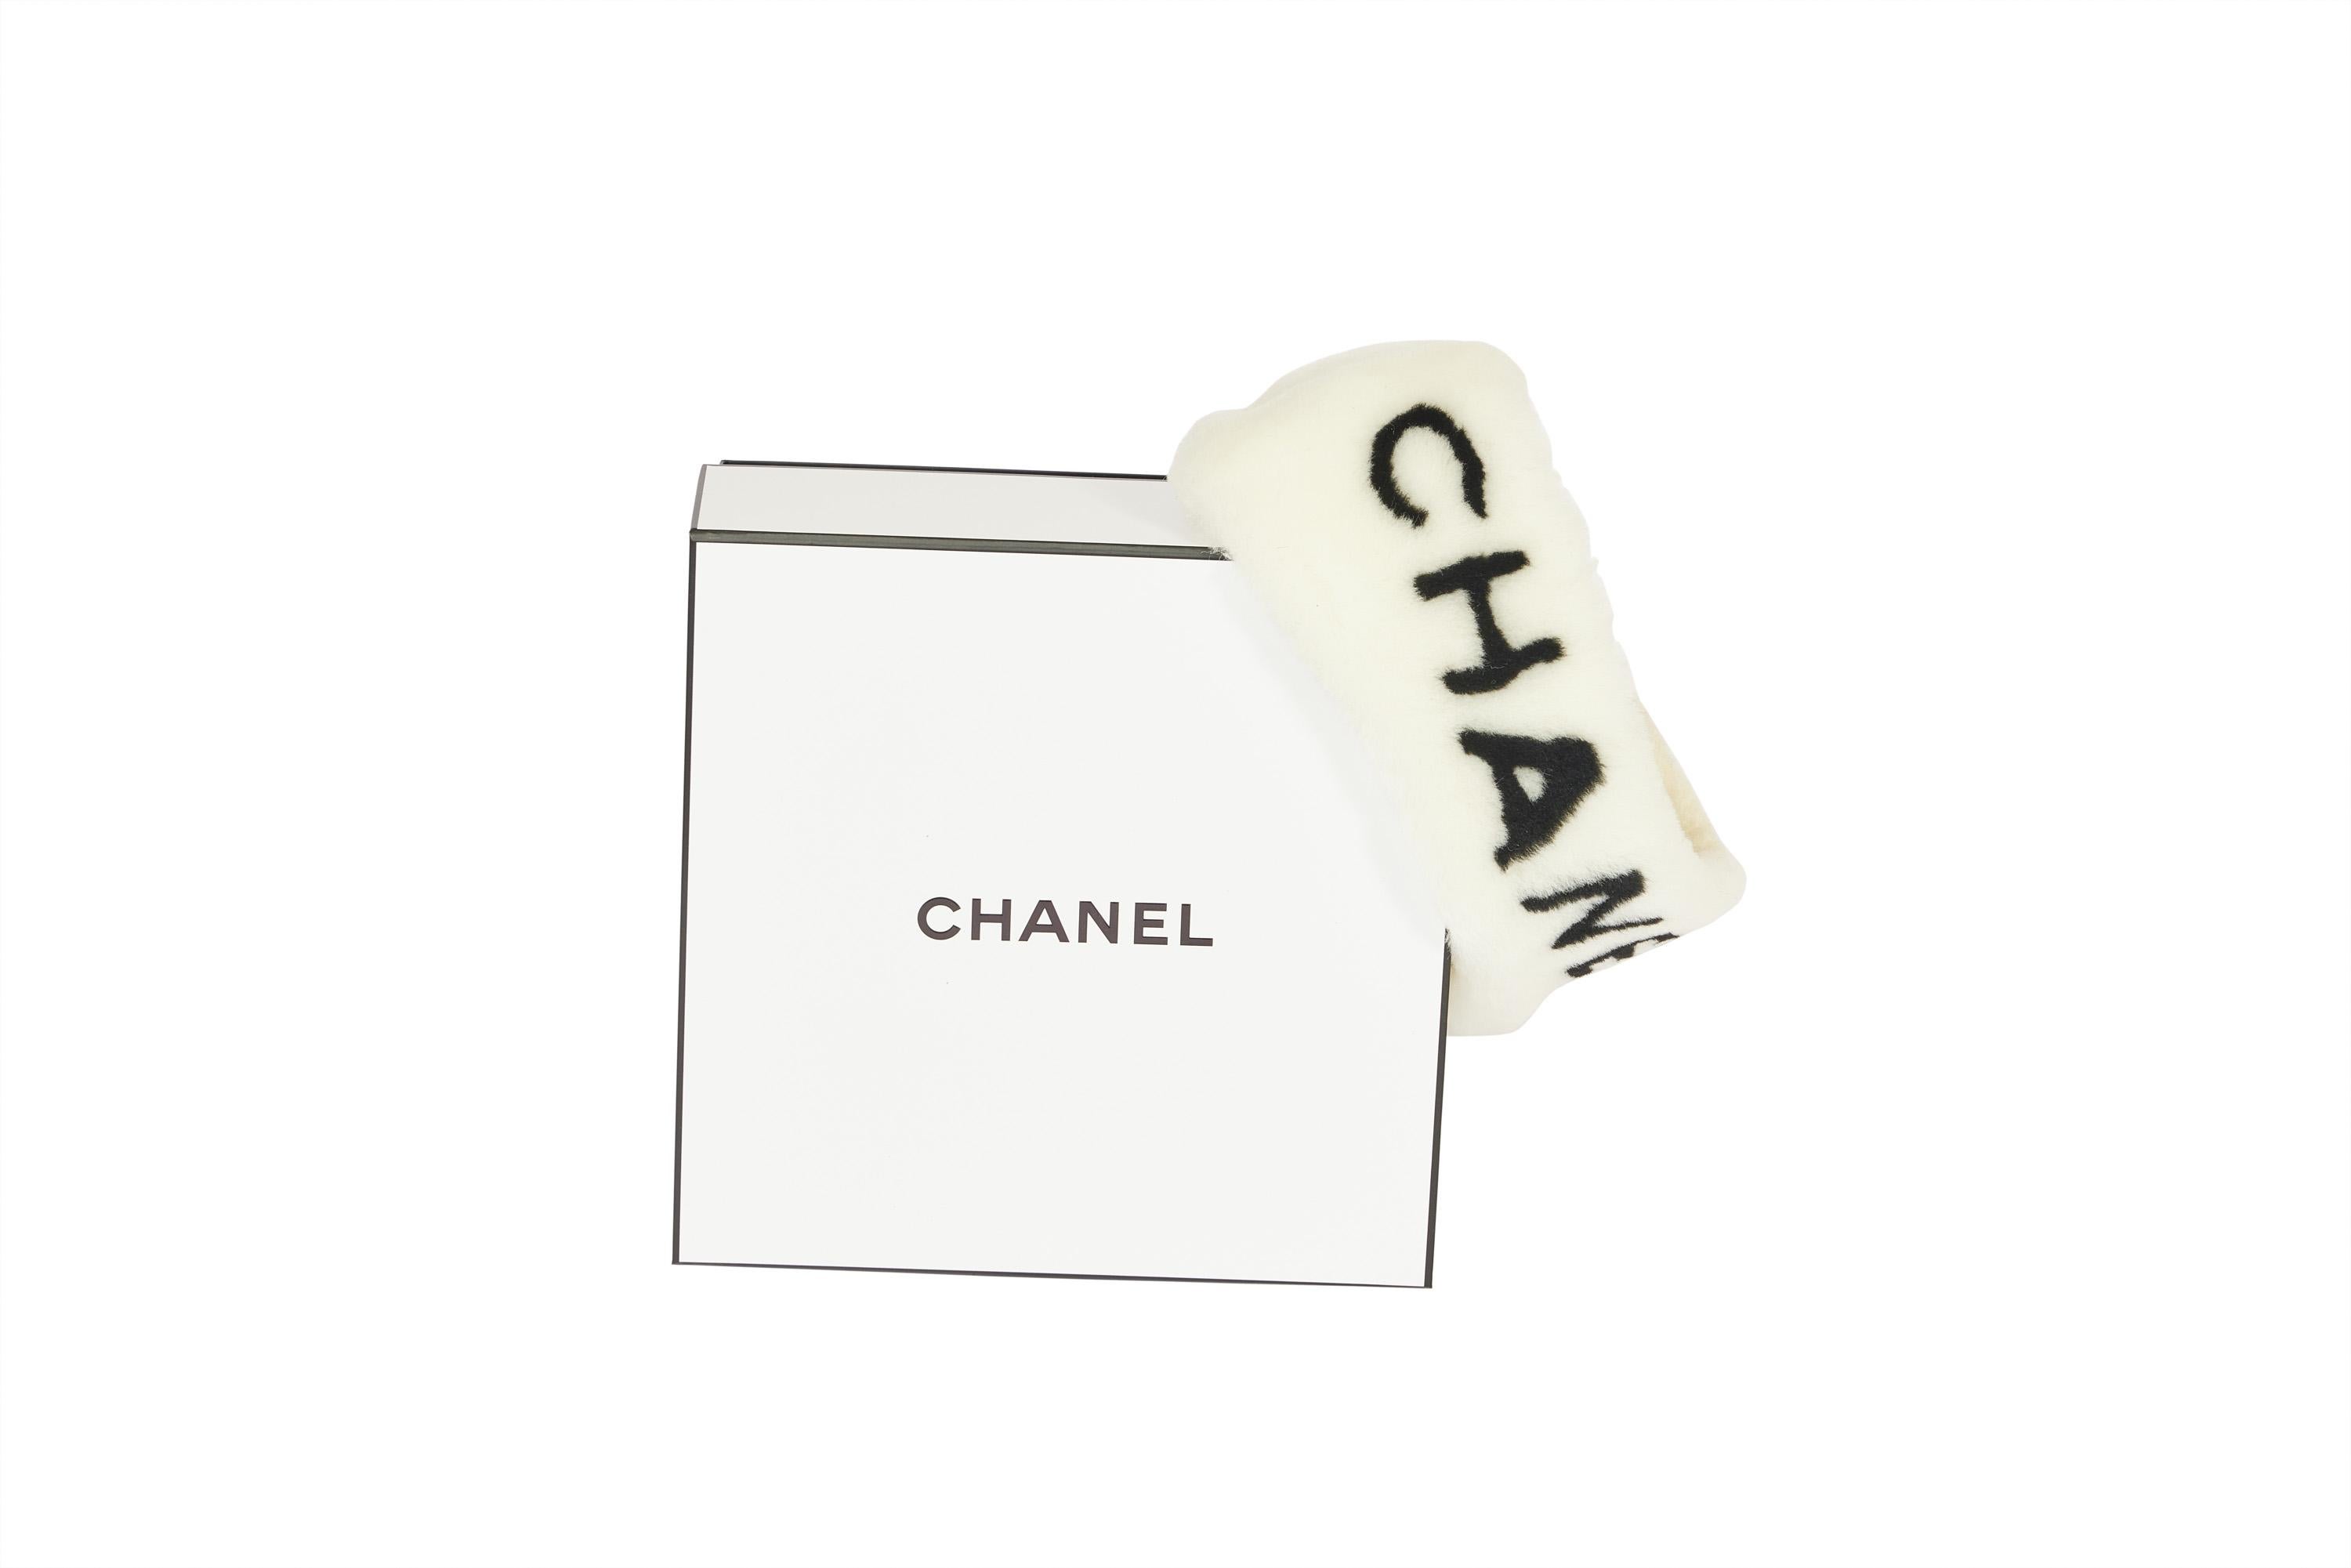 Ce bandeau de Chanel est très recherché. Il vous tient chaud et reste bien serré sur votre tête Il est tout neuf et n'a jamais été porté et est livré dans la boîte d'origine de Chanel. Sur le devant, il est écrit Chanel.